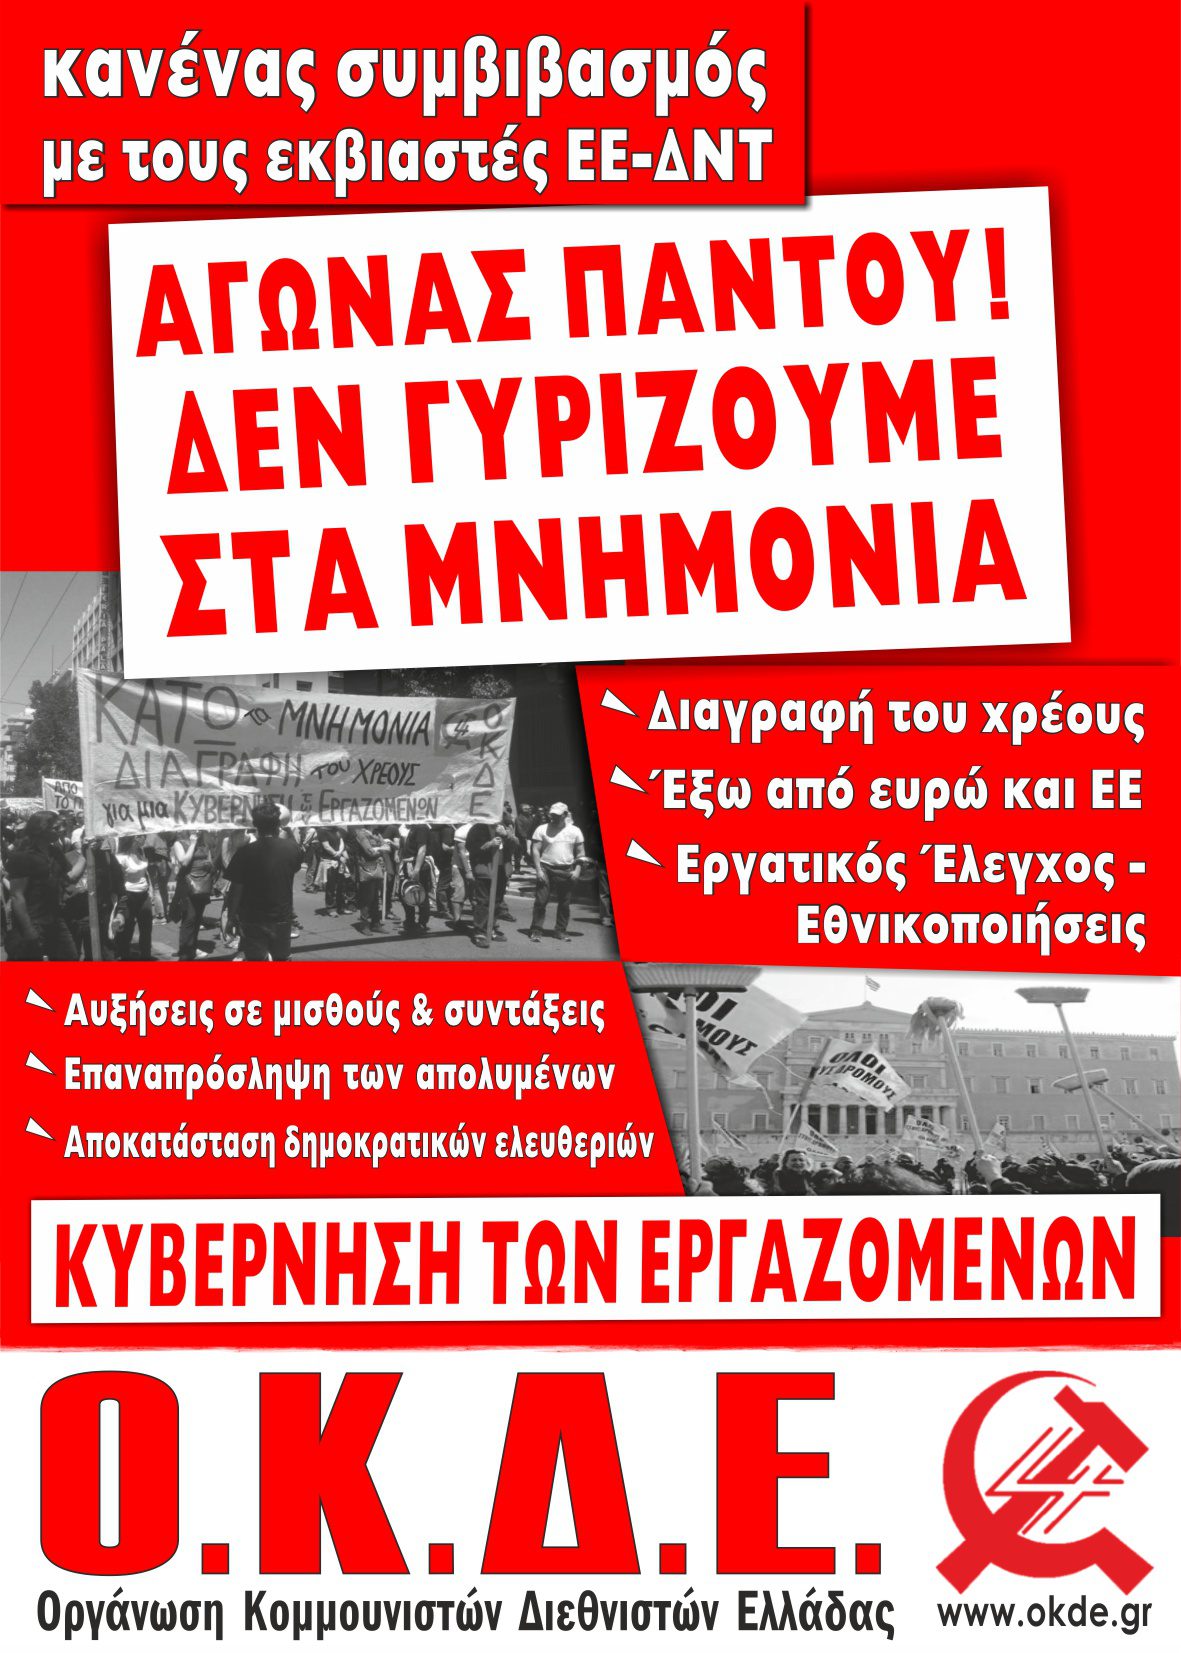 ΟΧΙ στη νέα συμφωνία. Ρήξη τώρα με ΕΕ-ΔΝΤ! Ανοιχτές συγκεντρώσεις – εκδηλώσεις της ΟΚΔΕ σε γειτονιές της Θεσσαλονίκης